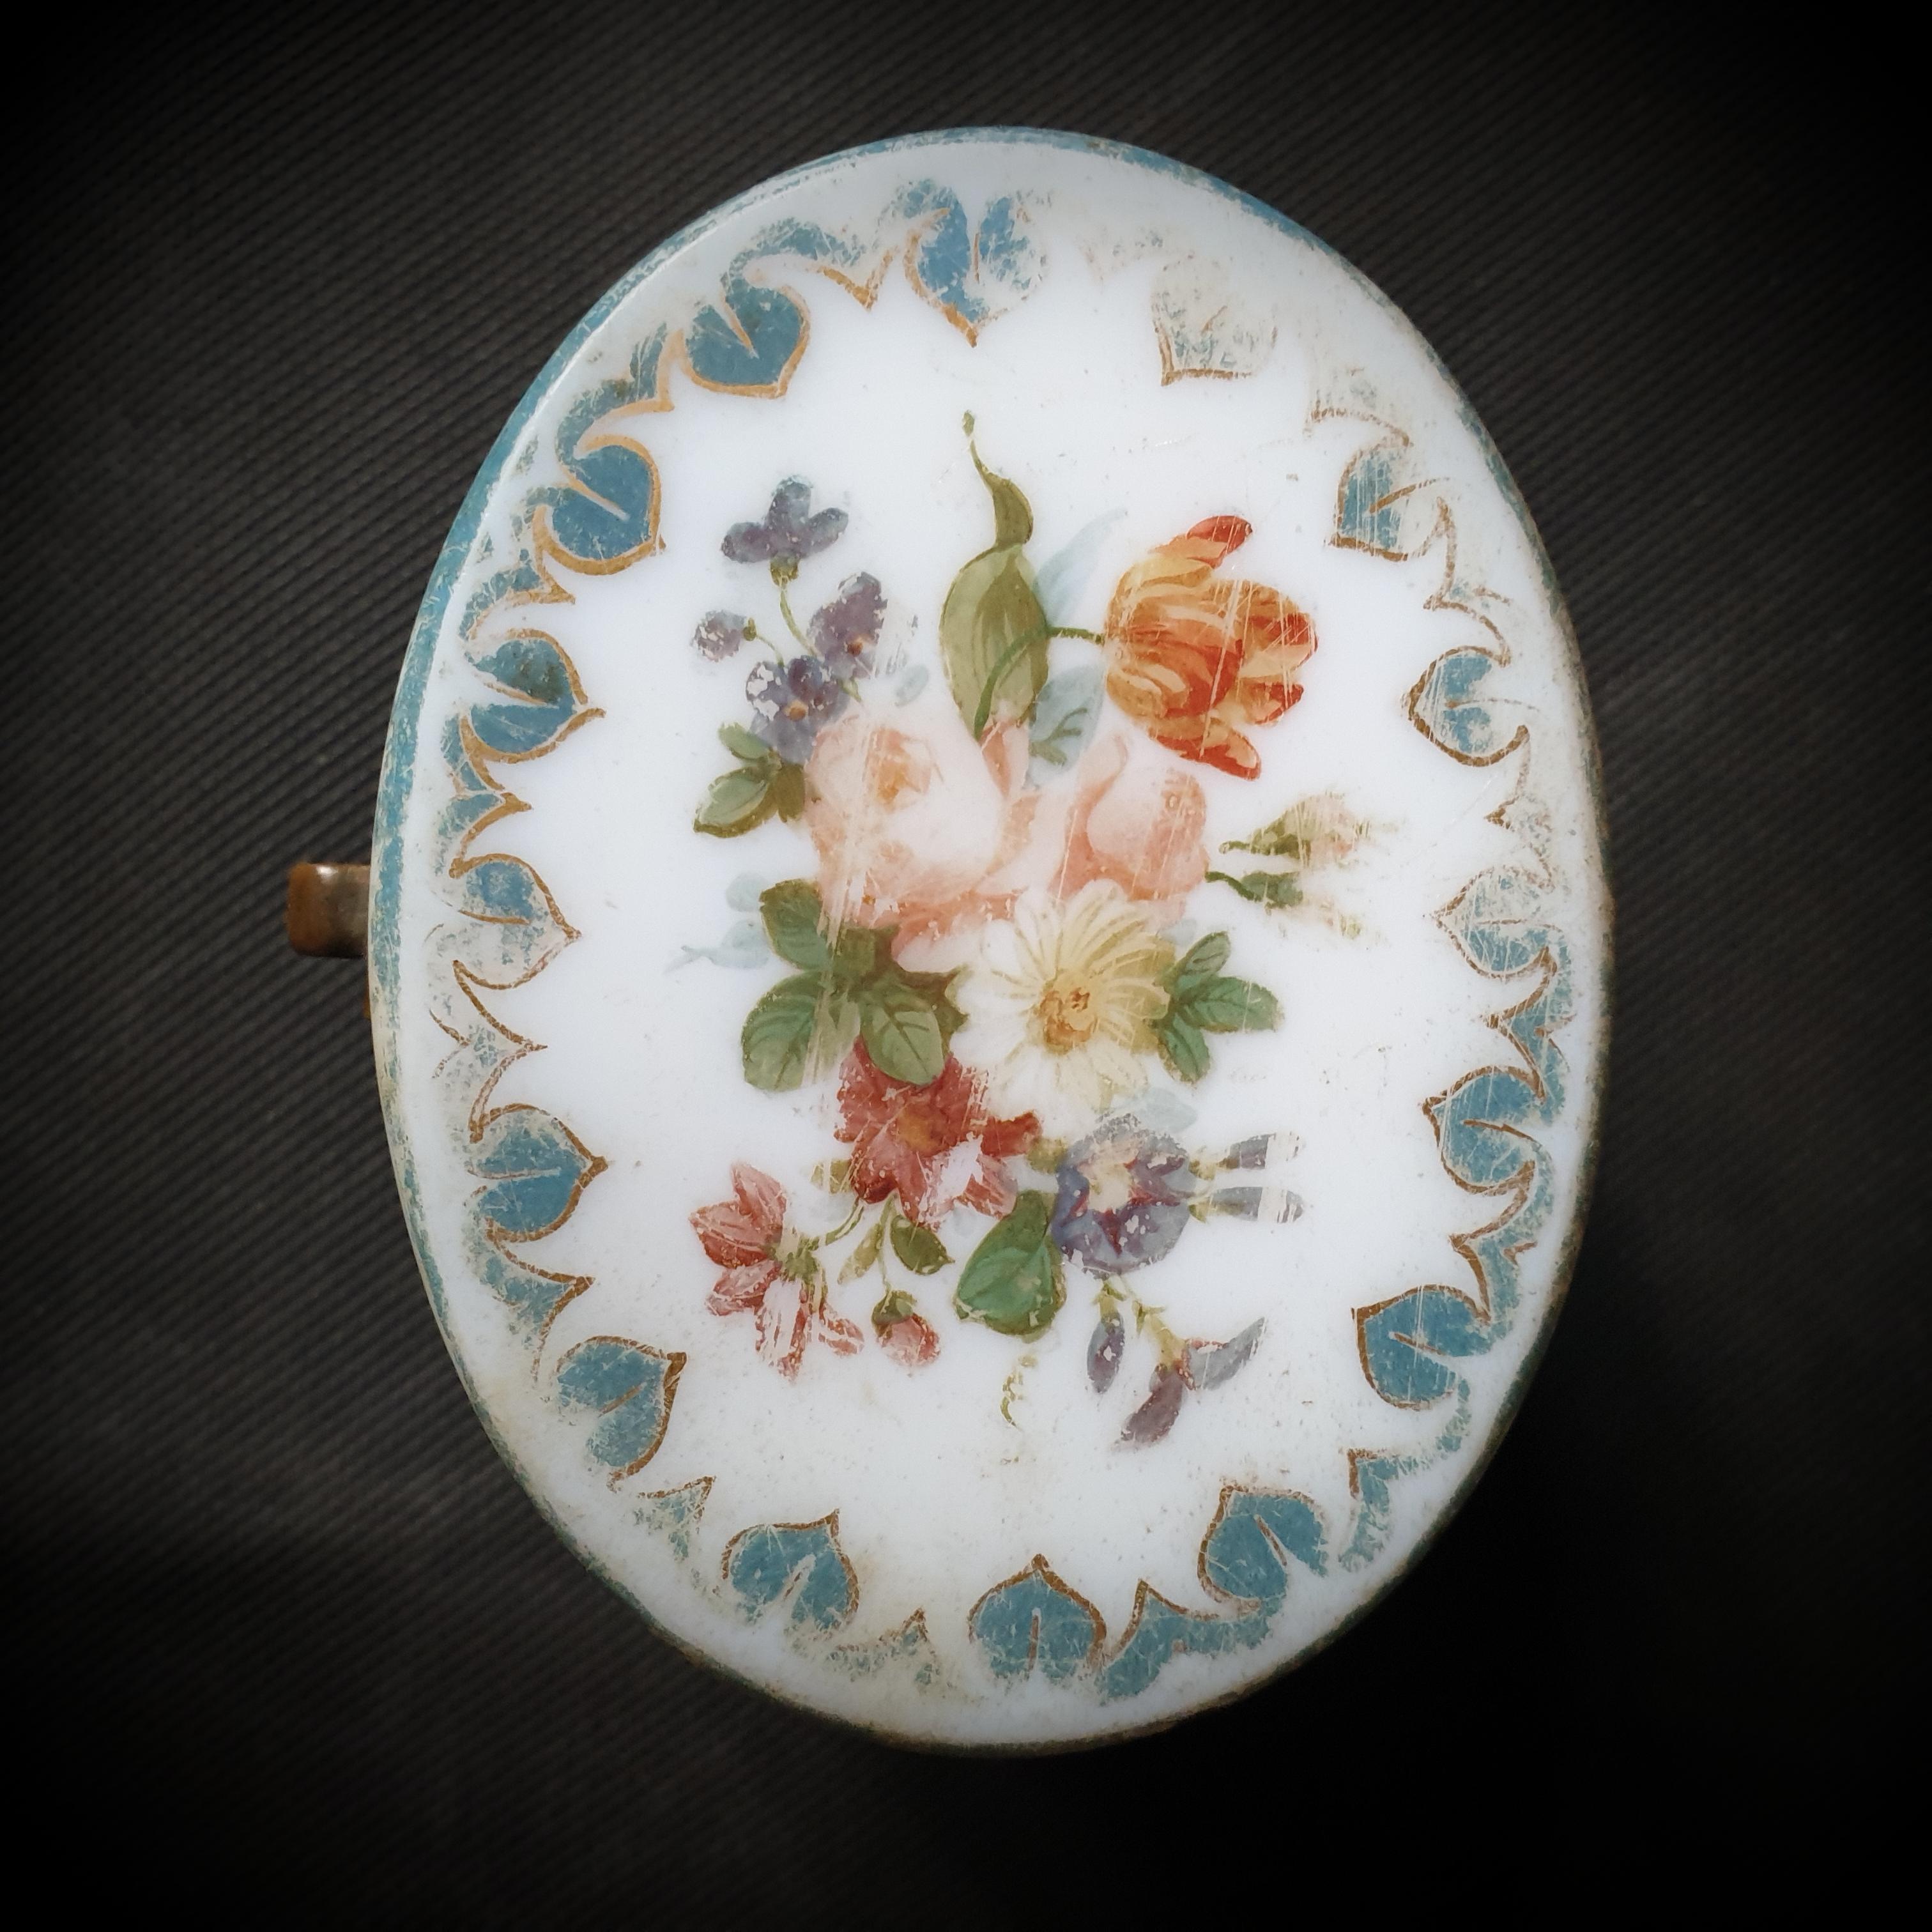 Voici un trésor classique de l'artisanat français du 19e siècle : une magnifique boîte en verre opalin avec un joli motif floral ! Conservez votre bien le plus précieux dans cette boîte circulaire de 7,5x9,5x7,5 cm, transparente, dorée et peinte,